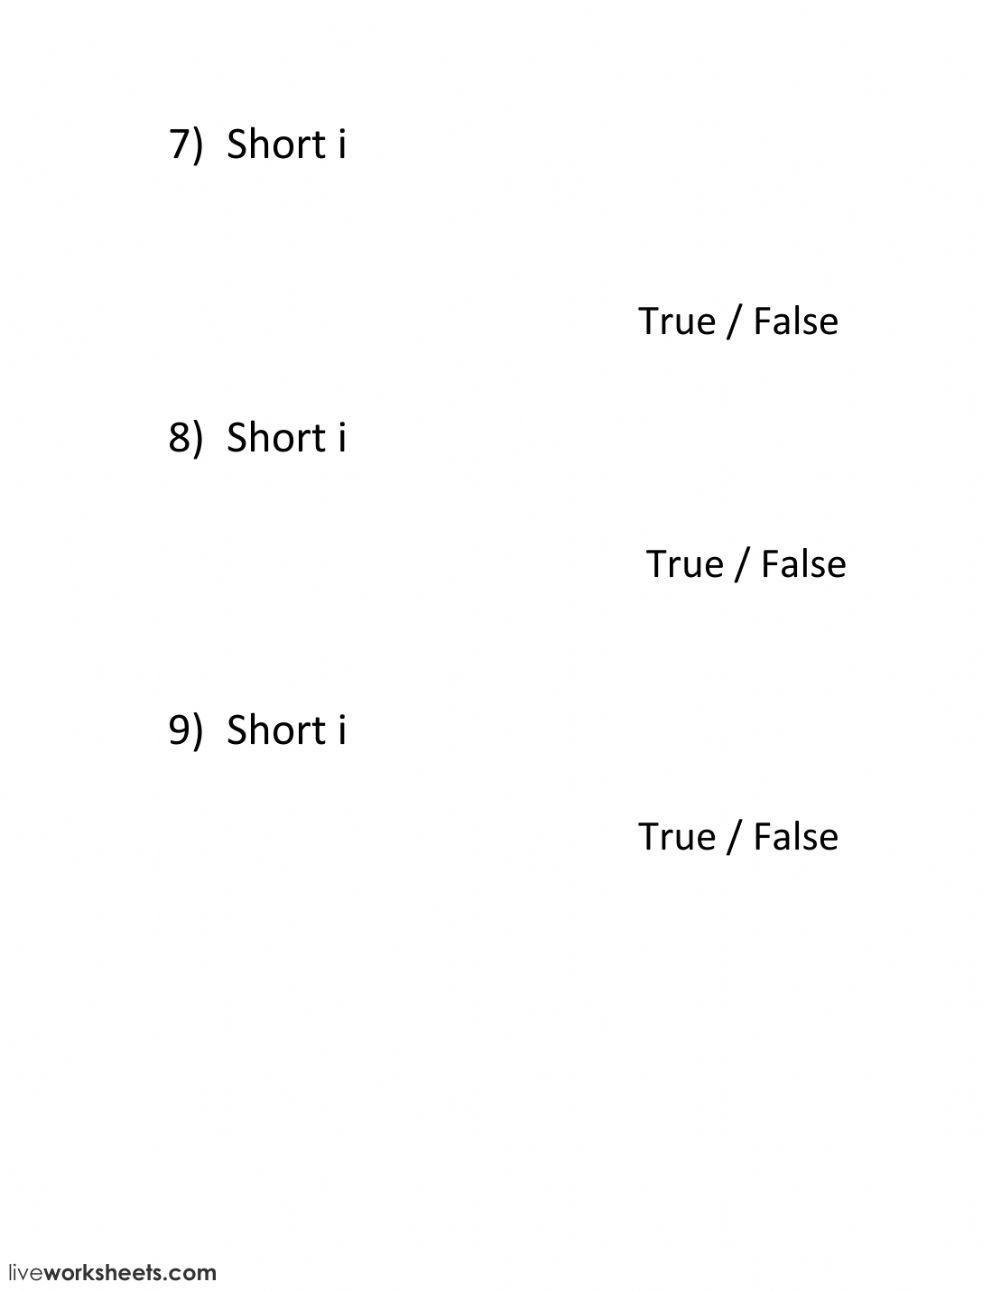 True or false - short i 2